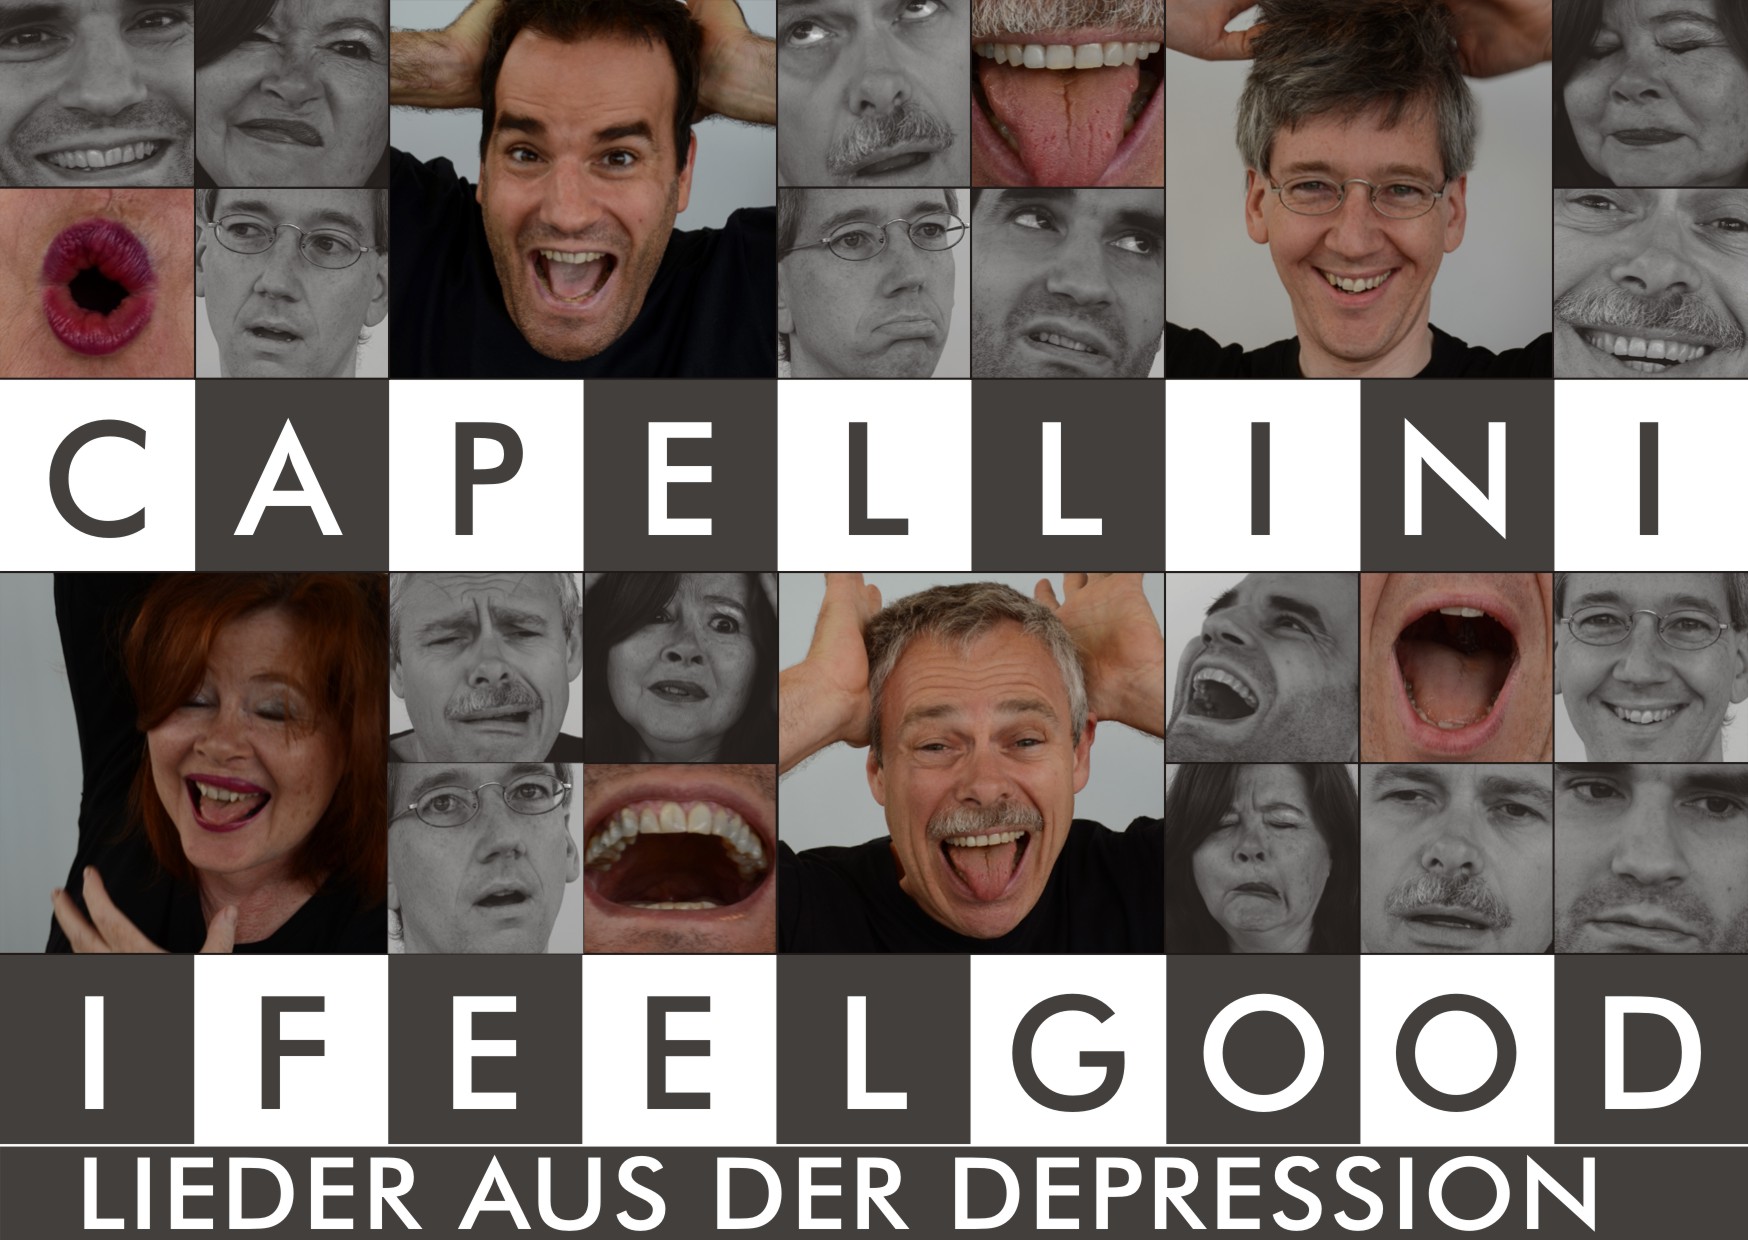 Capellini - I feel good